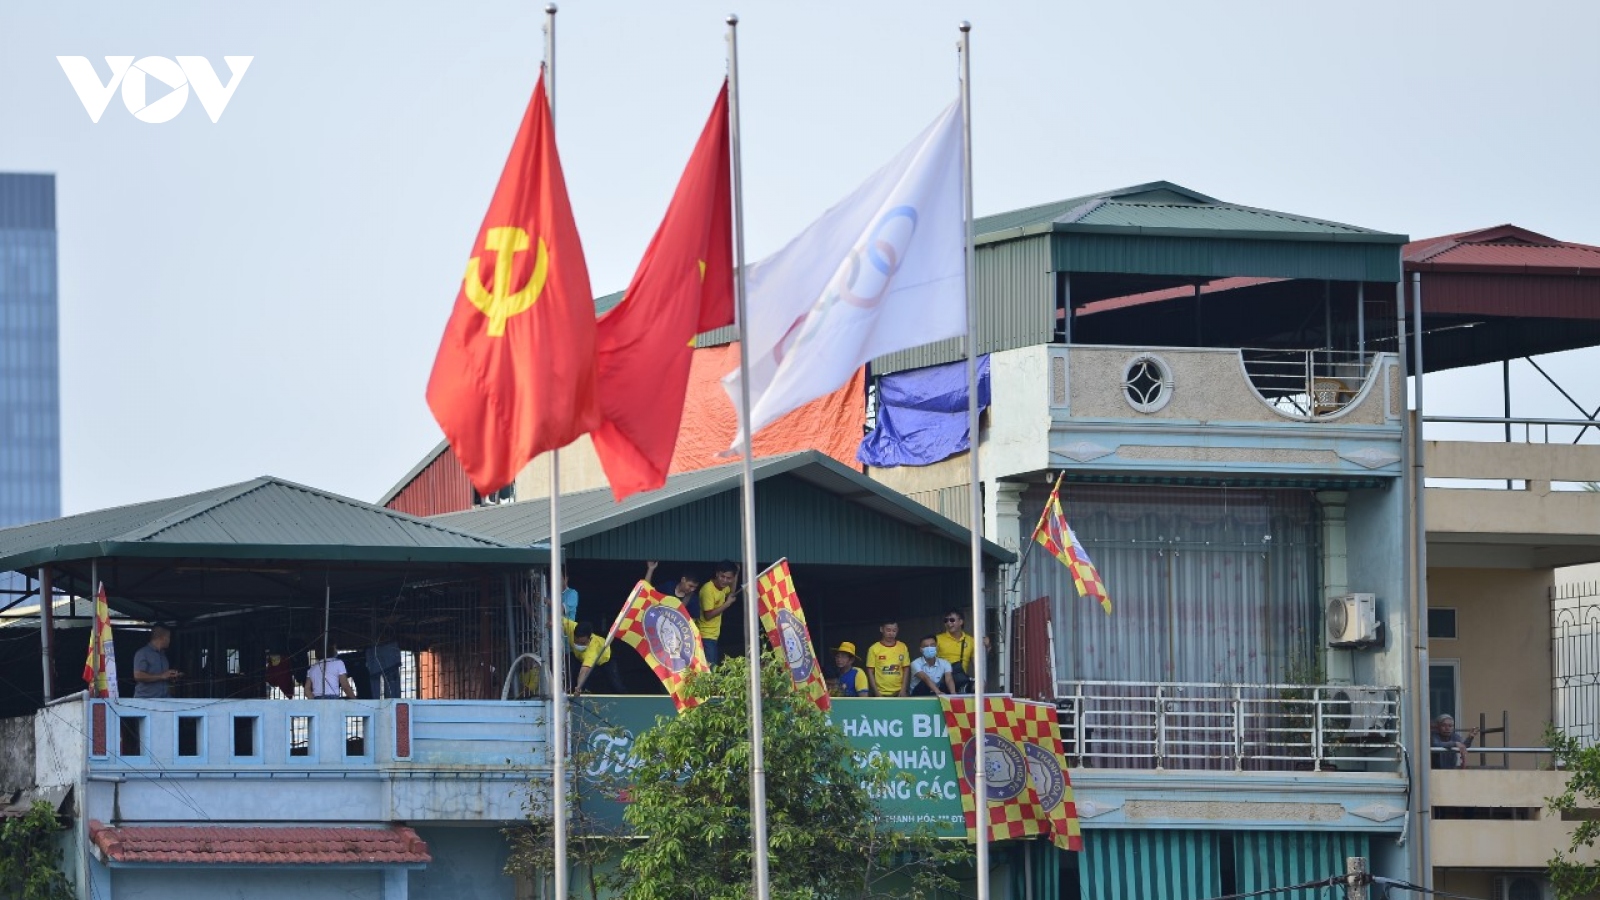 Không được vào sân, CĐV theo dõi trận Thanh Hóa - HAGL theo cách "đặc biệt"